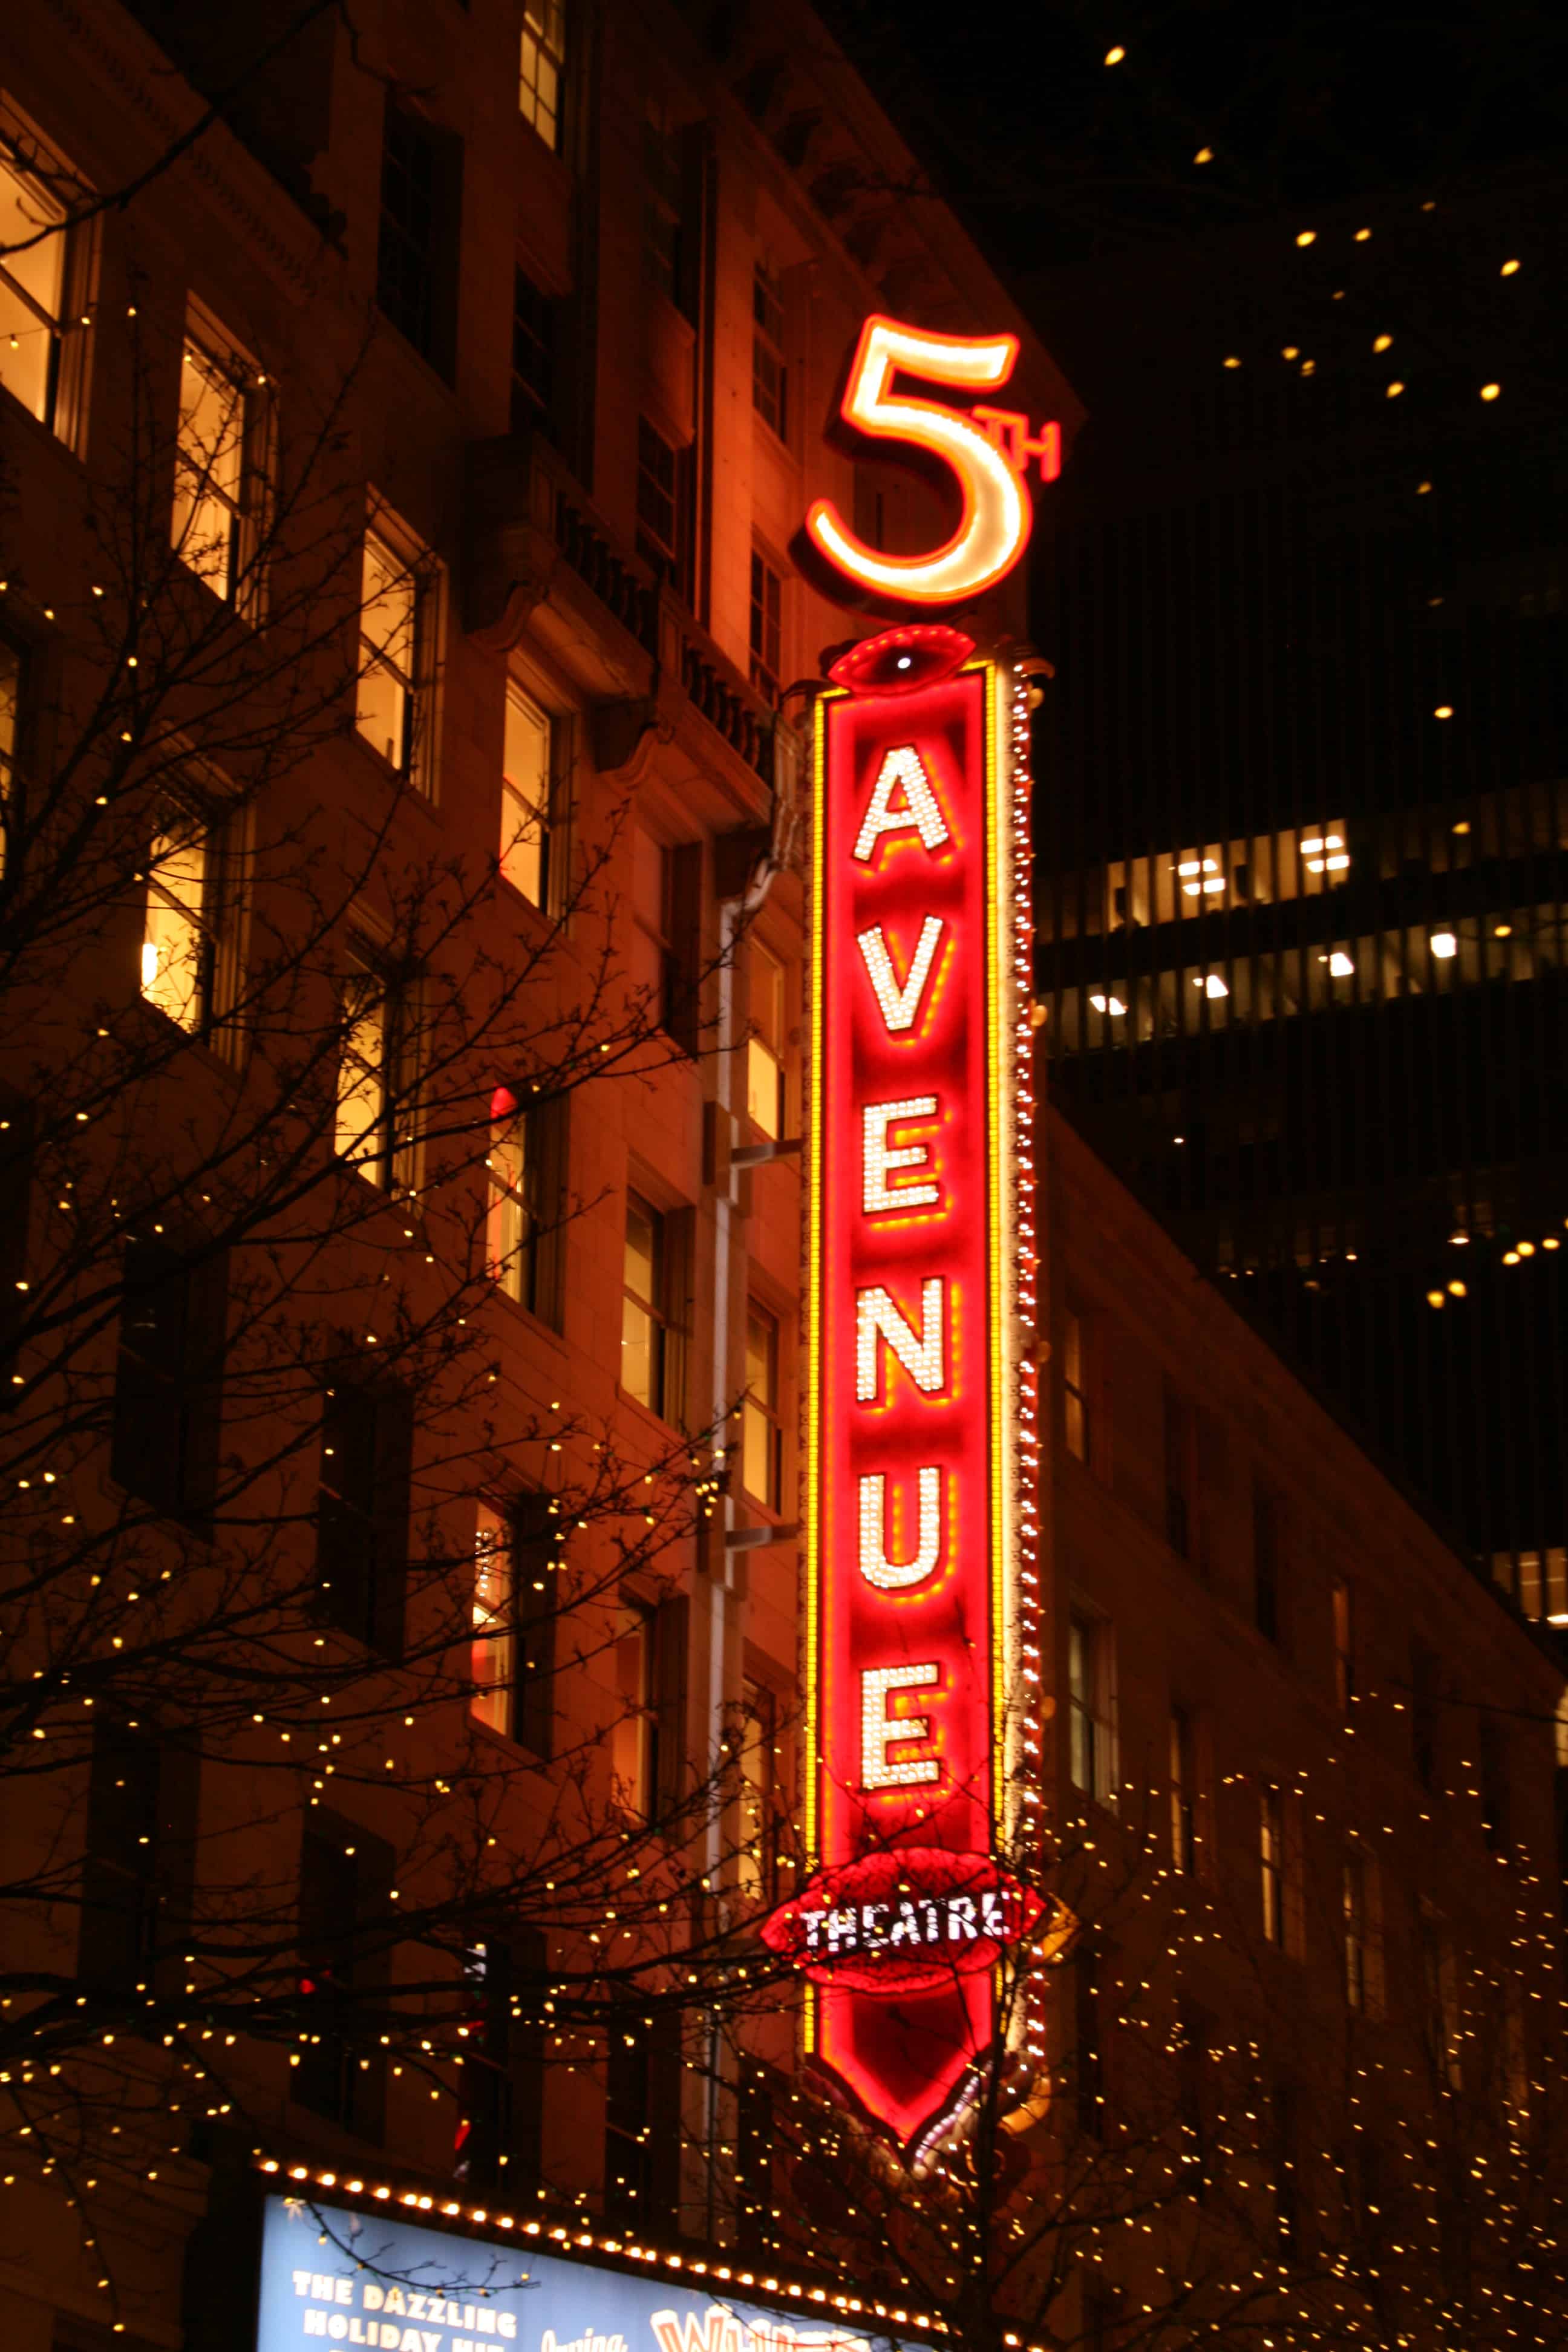 5th Avenue Theatre Creo